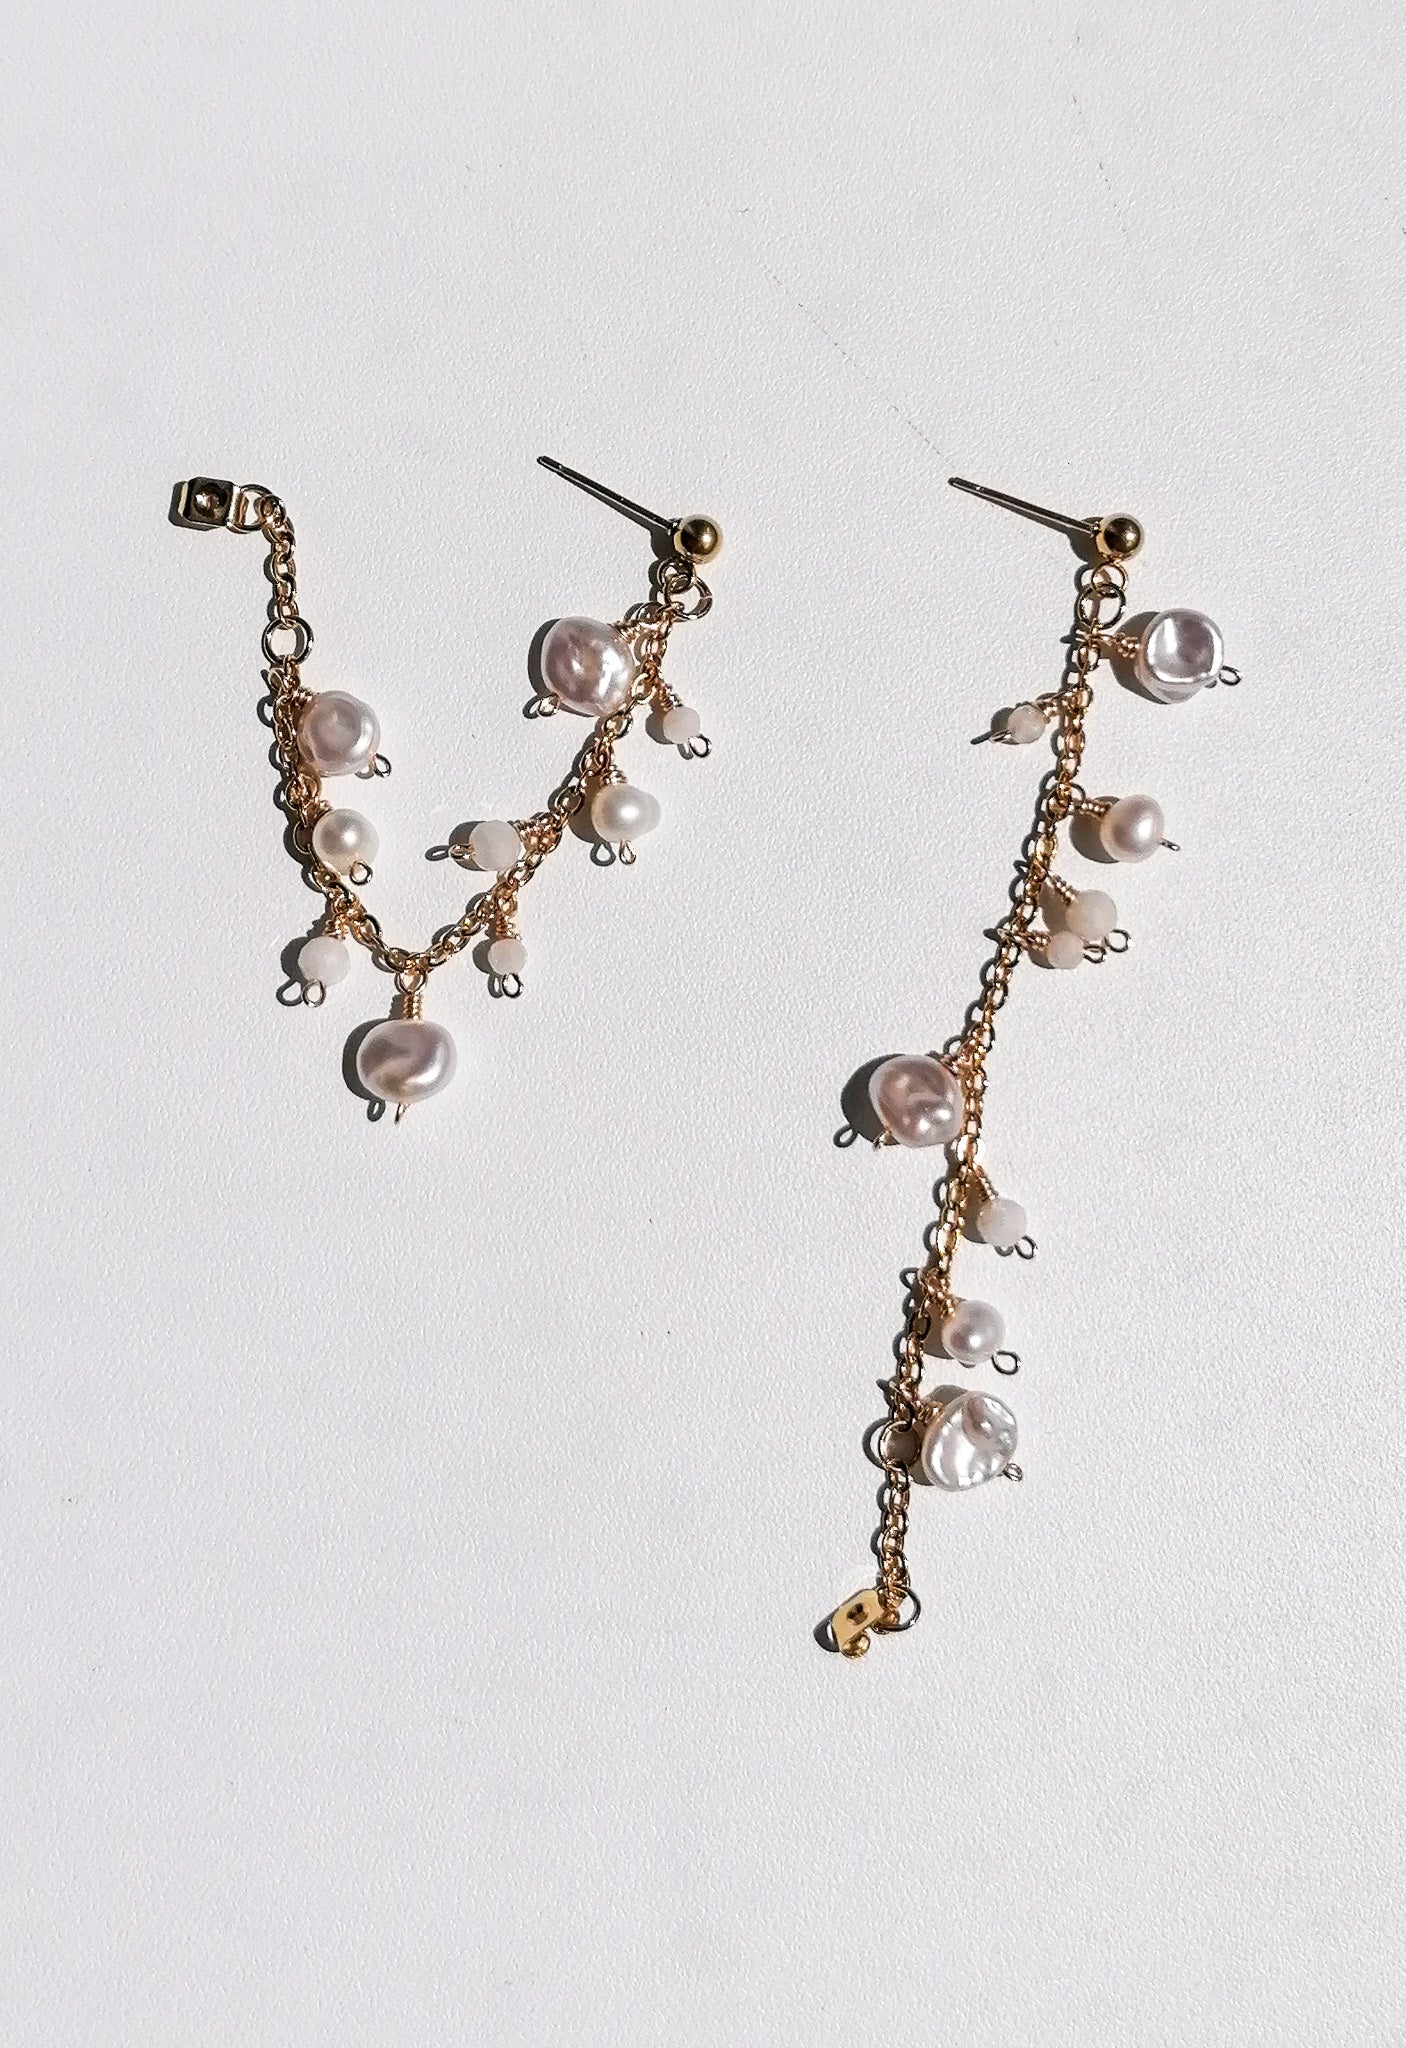 Lima earrings